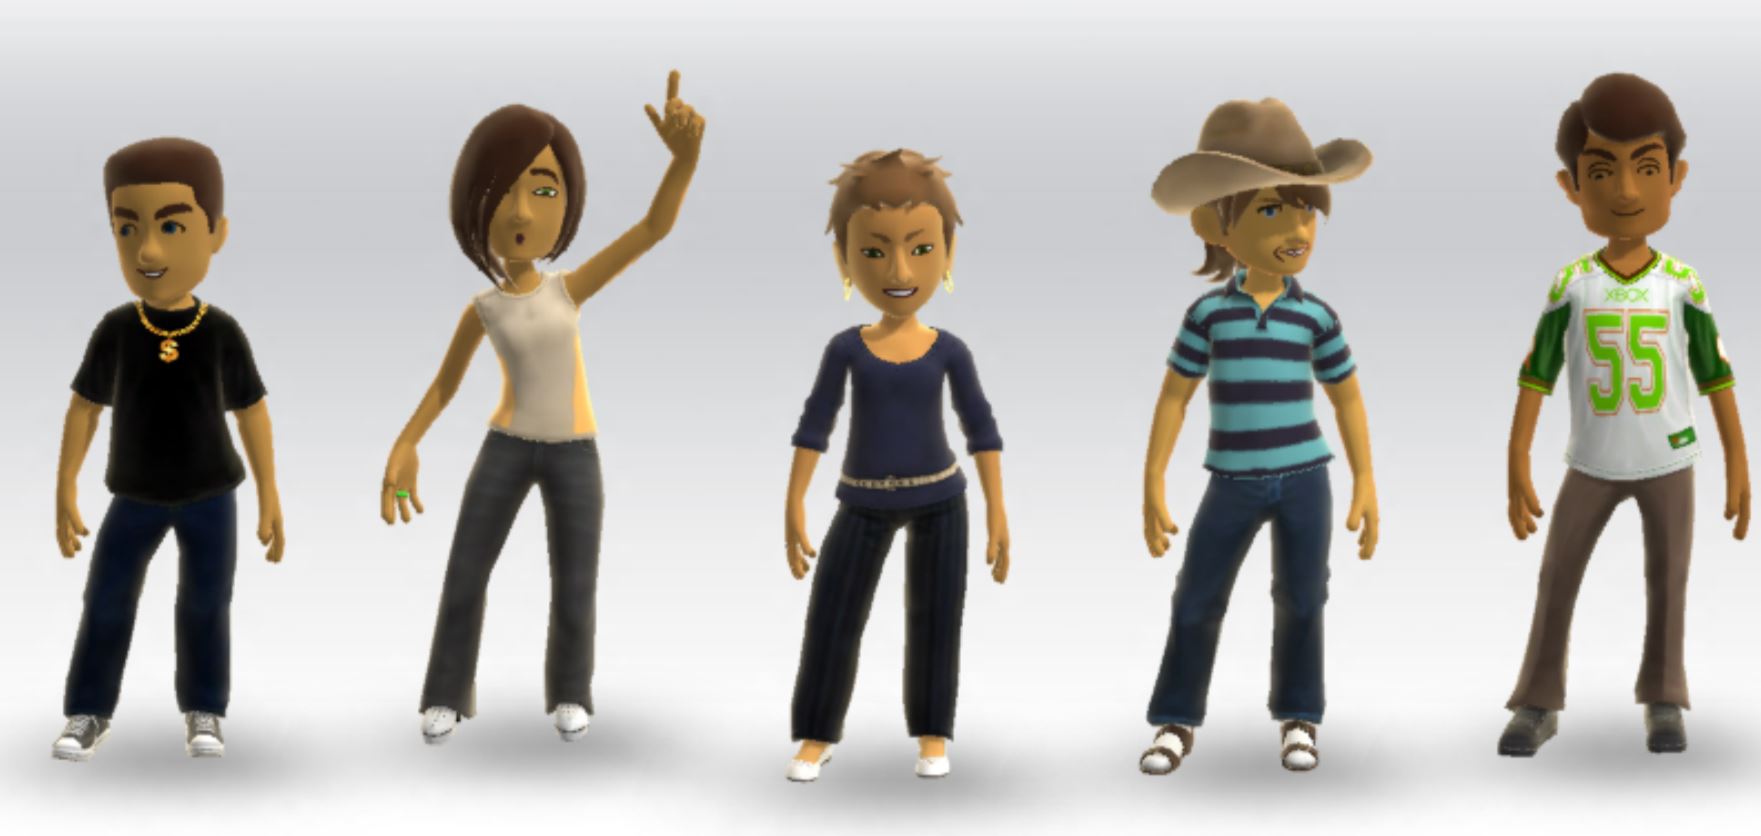 Η Microsoft αρχίζει να δοκιμάζει νέα διαφορετικά Xbox Live avatars!